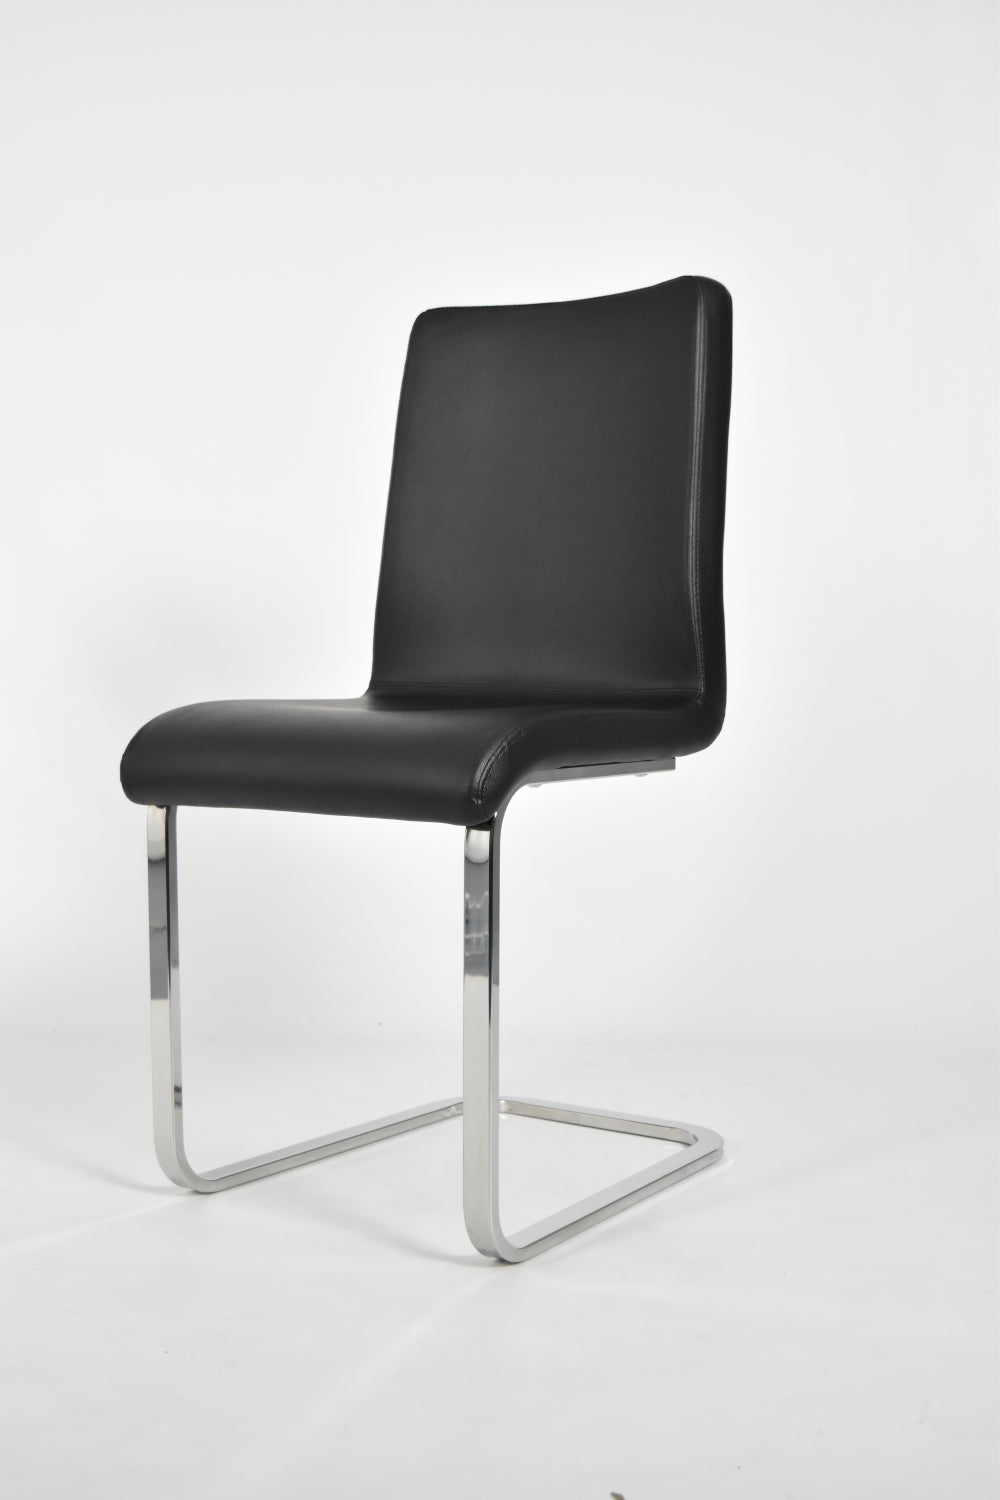 Tommychairs - Set sillas Greta Cantilever con Patas de Acero Cromado de Alta Resistencia y Asiento en Madera Multicapa, tapizado en Polipiel negra